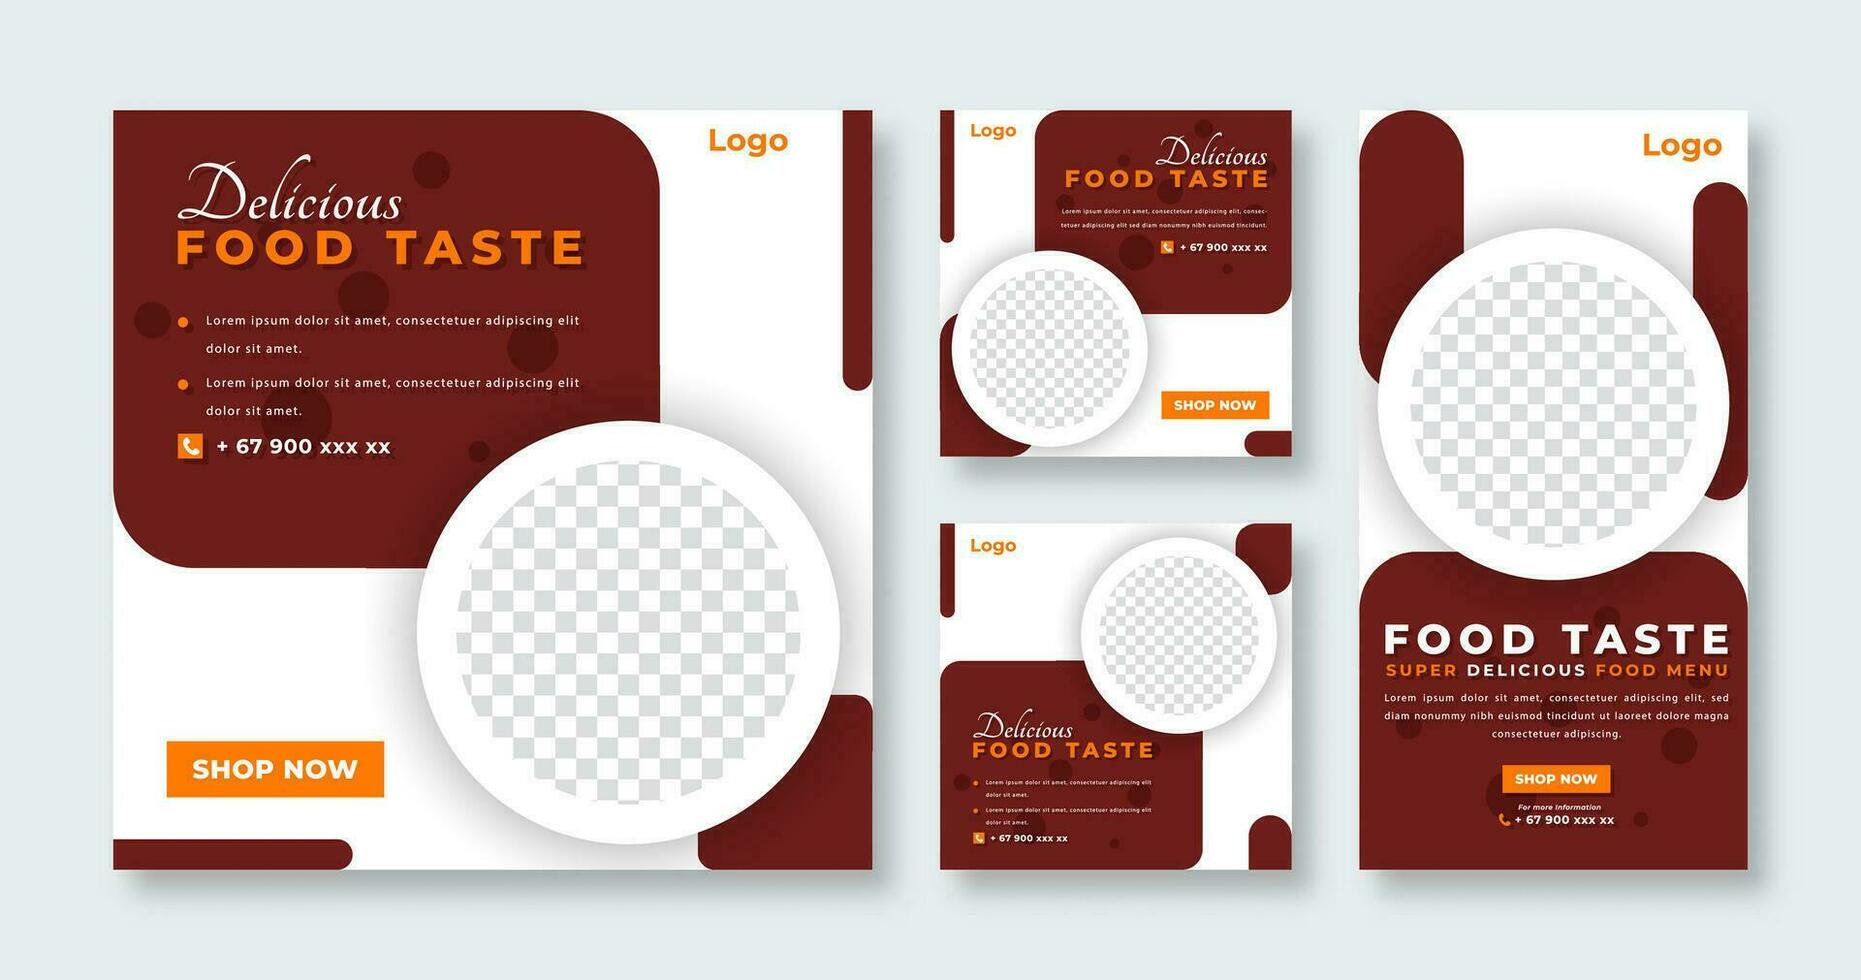 köstlich Essen Restaurant Sozial Medien Post zum online Marketing Beförderung Banner, Geschichte und Netz Internet Anzeigen Flyer vektor